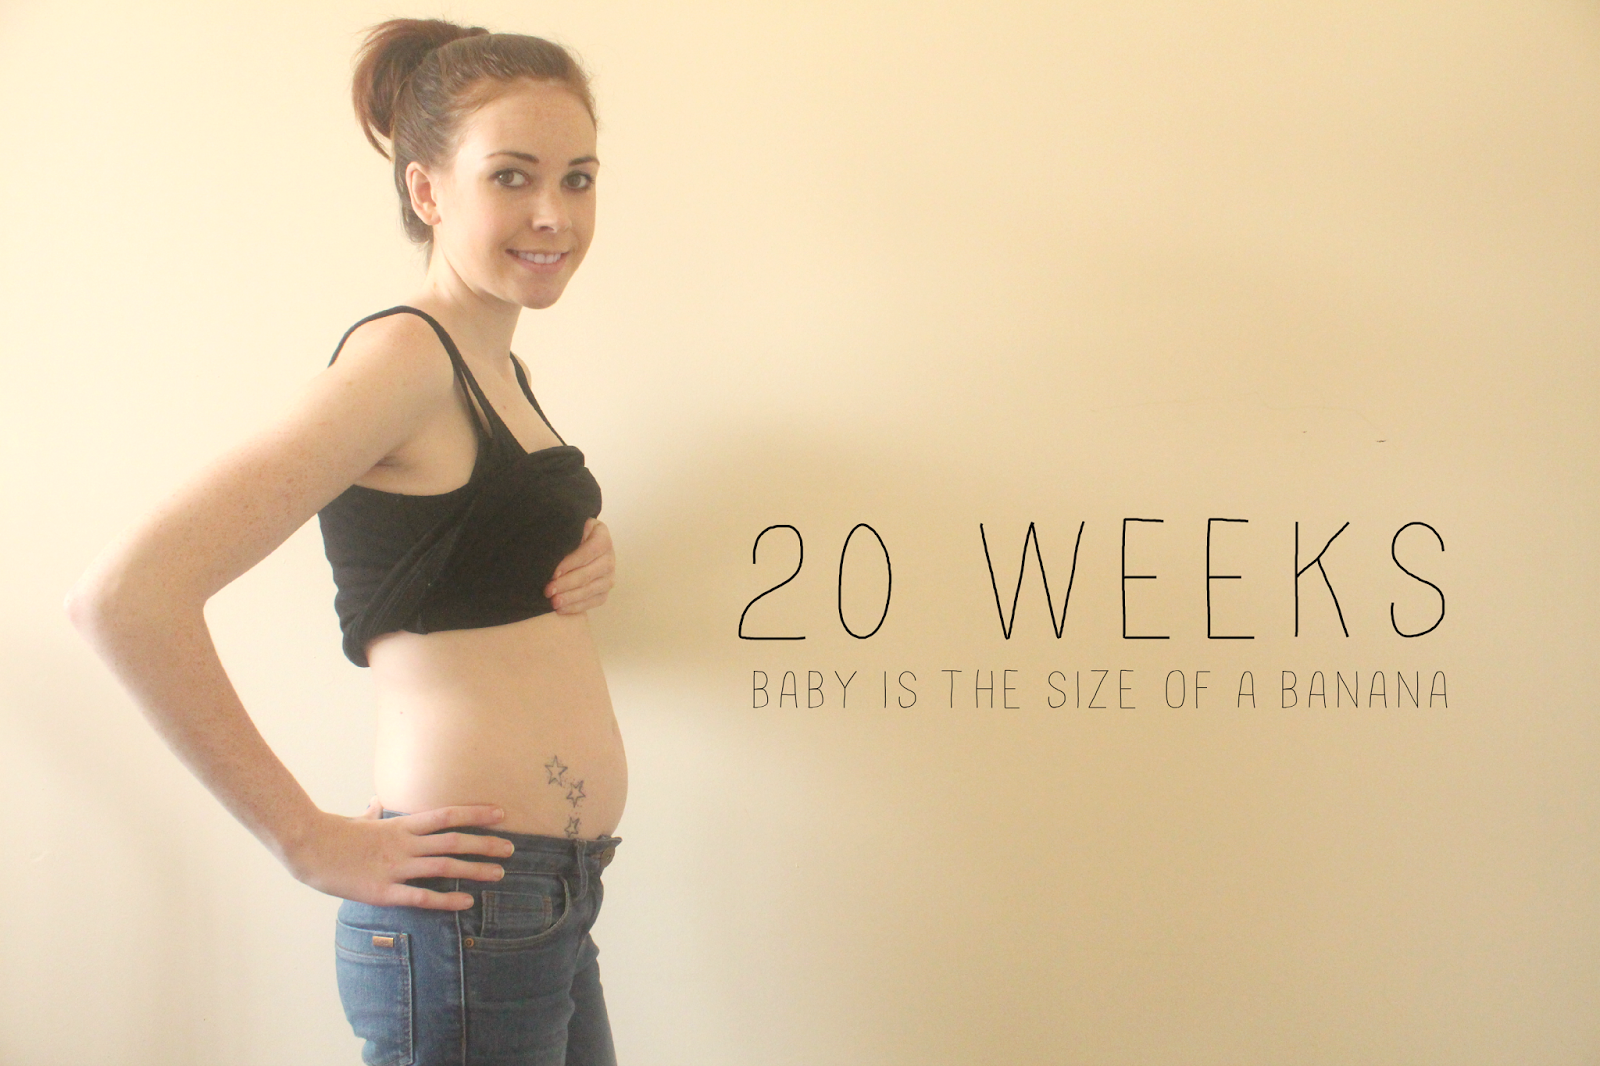 Легкая беременность форум. Живот на 20 неделе беременности. Фотосессия в 20 недель беременности. 20 Weeks pregnant.